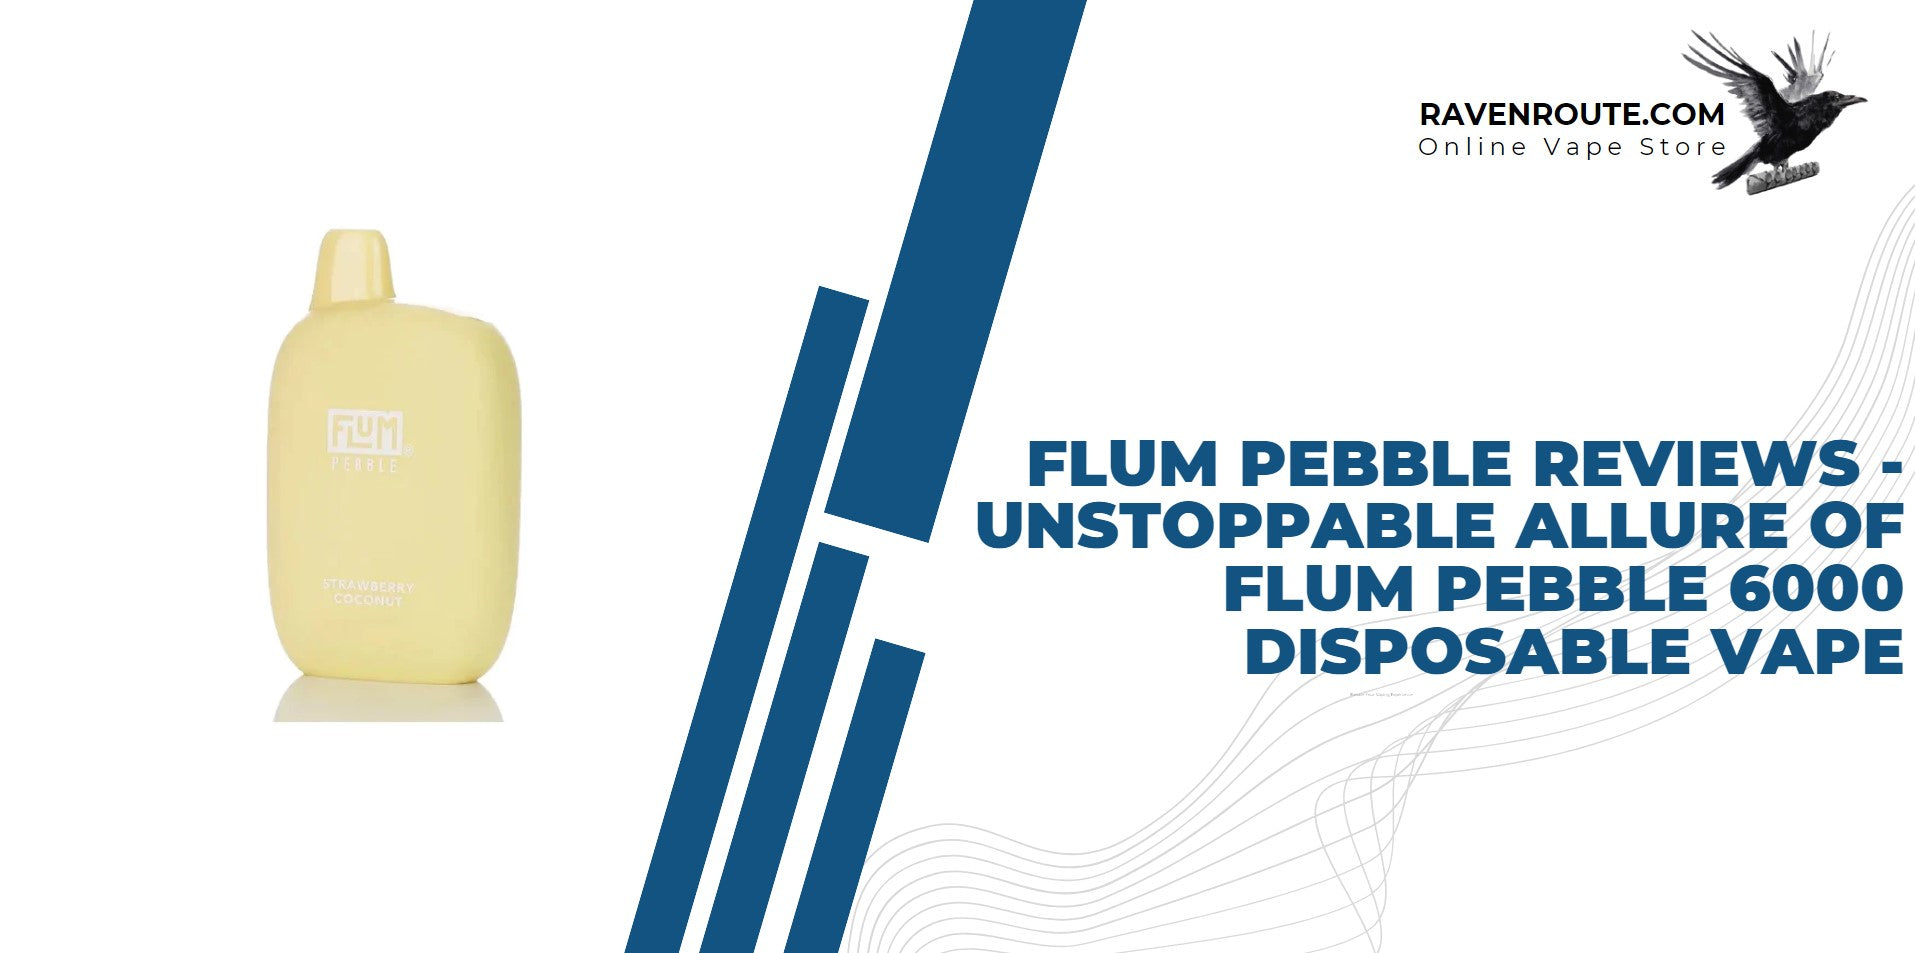 Flum Pebble 6000 Reviews - Unstoppable Allure of Flum Pebble 6000 Disposable Vape